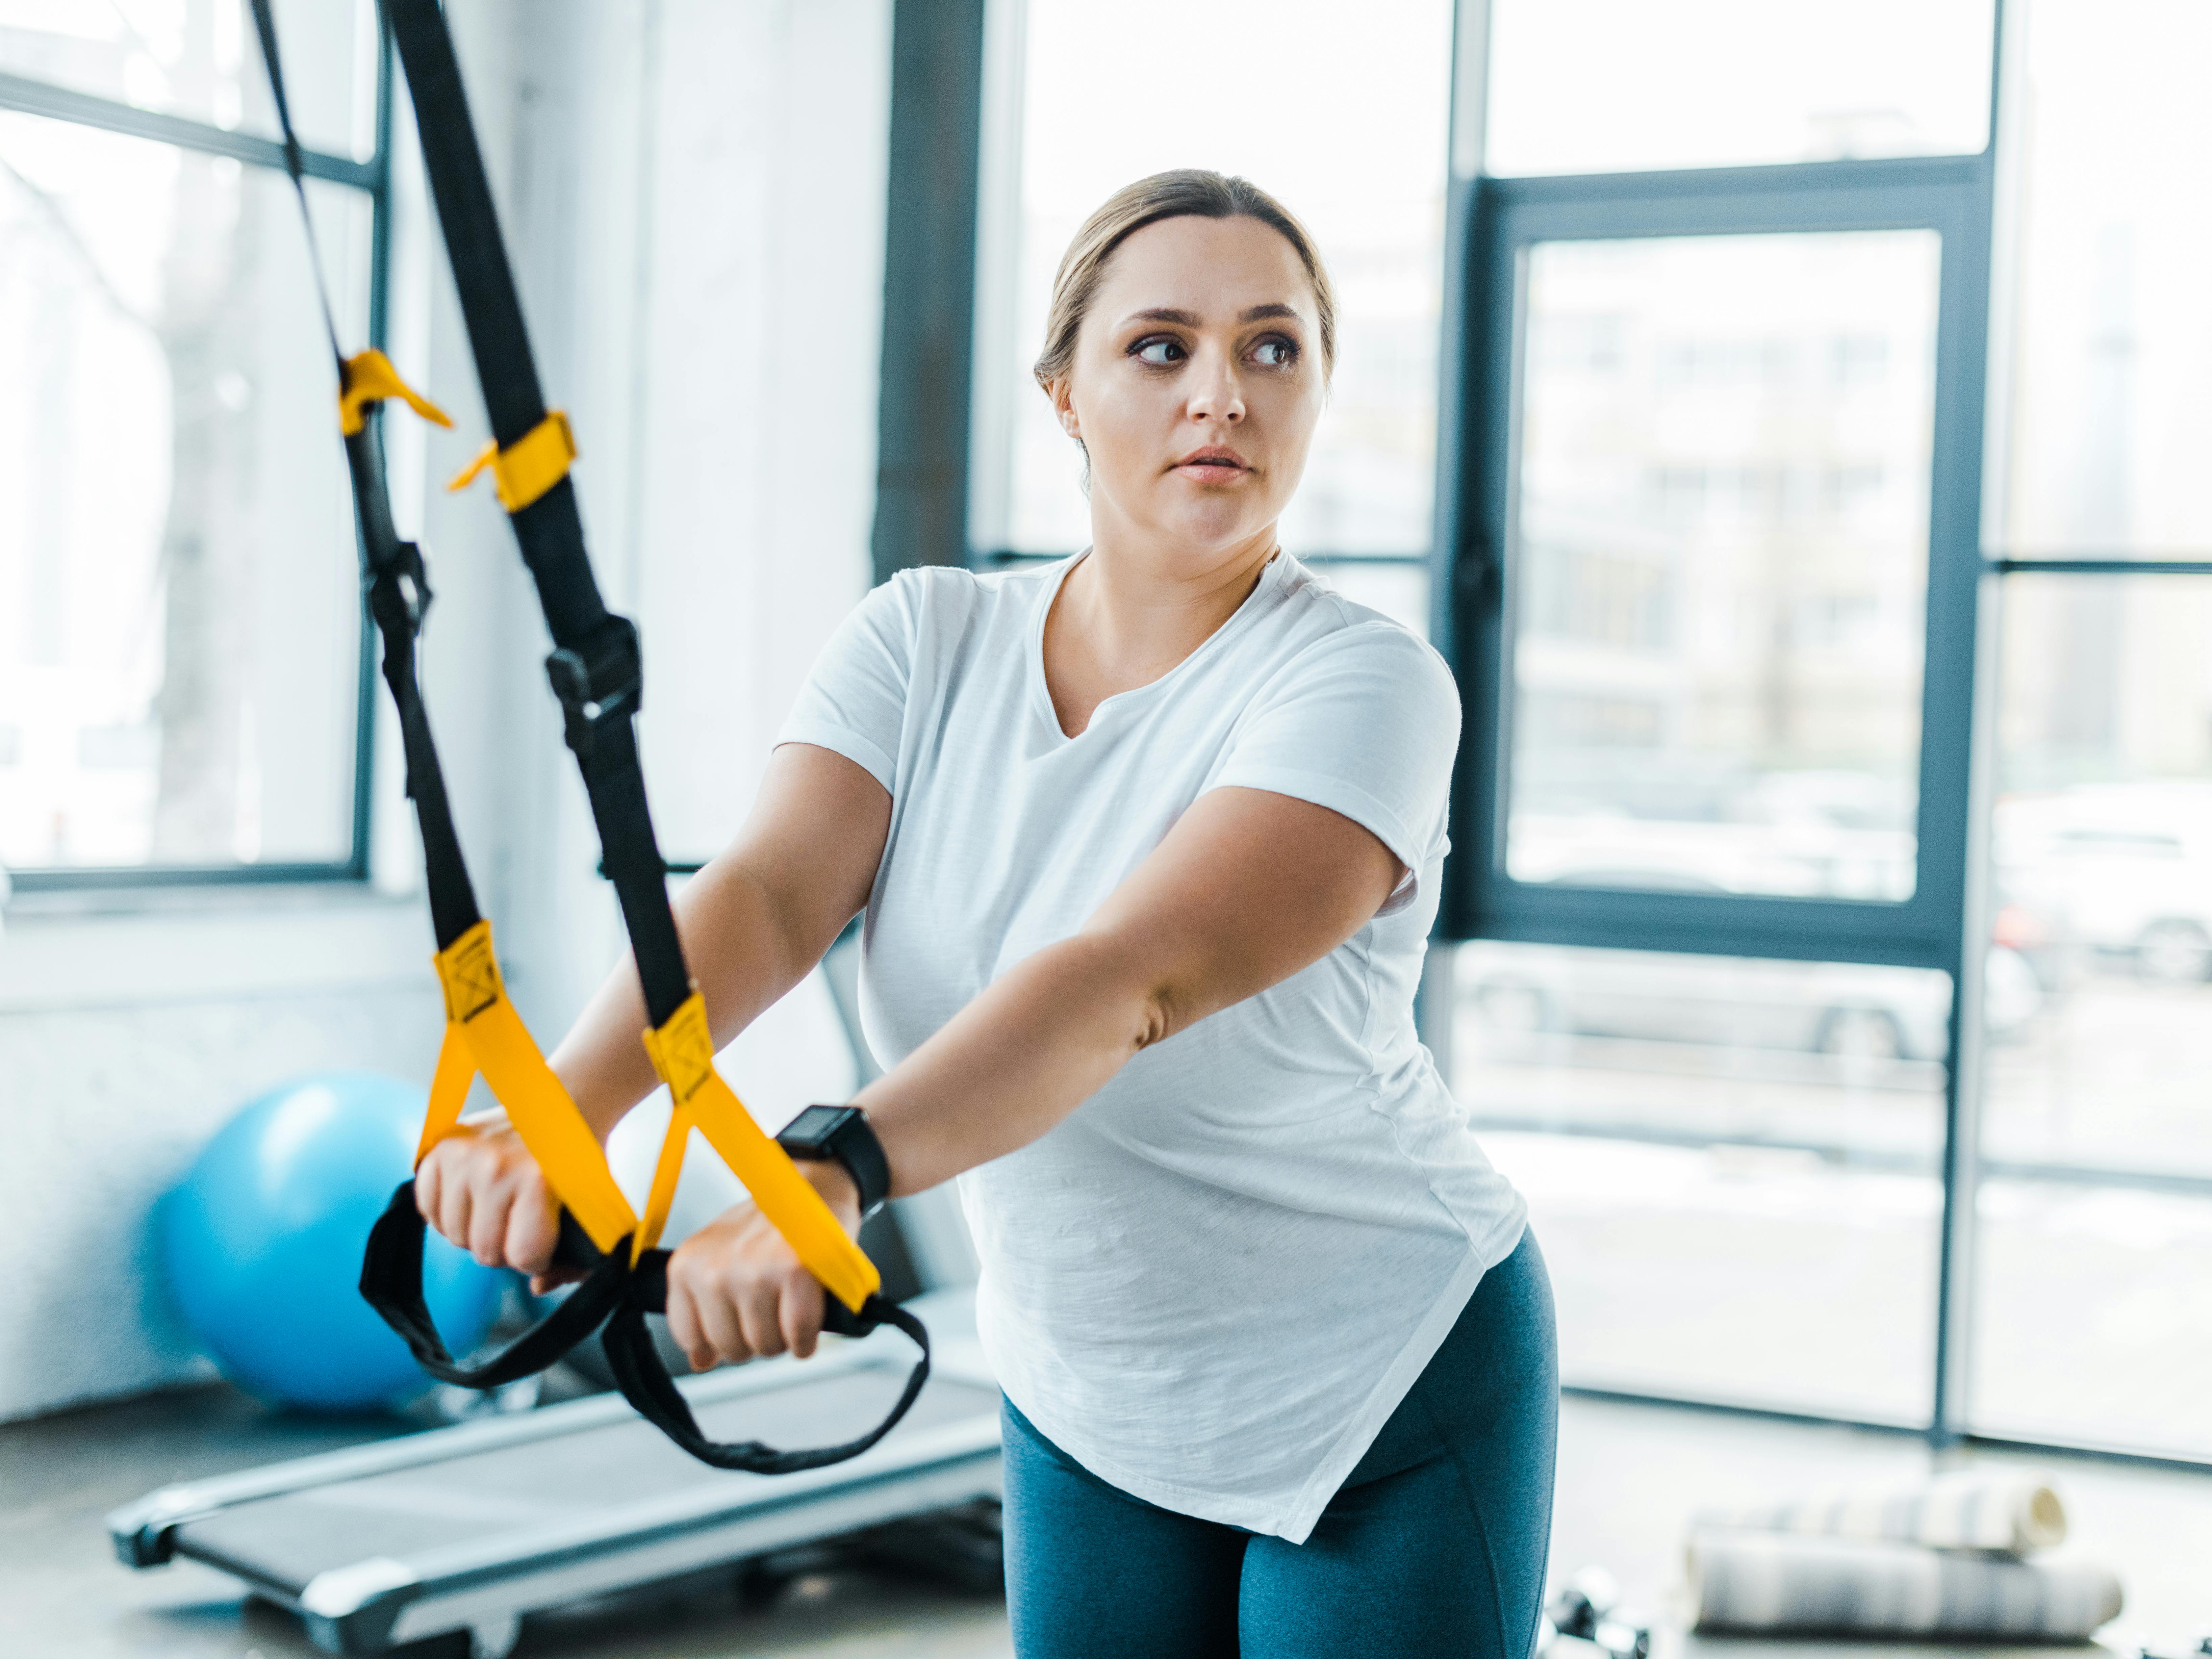 Ung kvinde træner sine arme i fitnesscenter